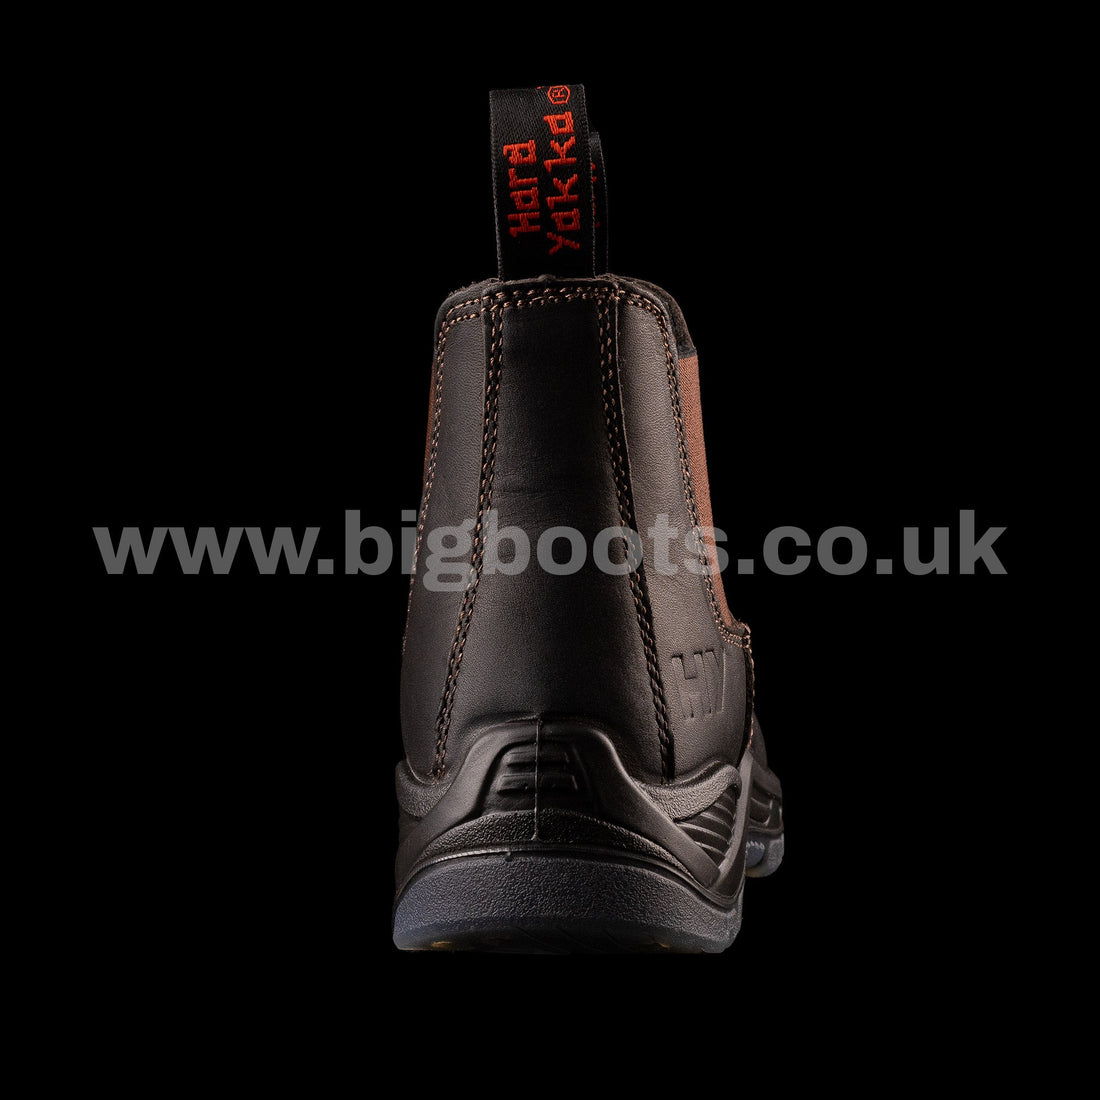 Hard Yakka Mens BANJO Elastic Sided Safety Boots - BIG Boots UK